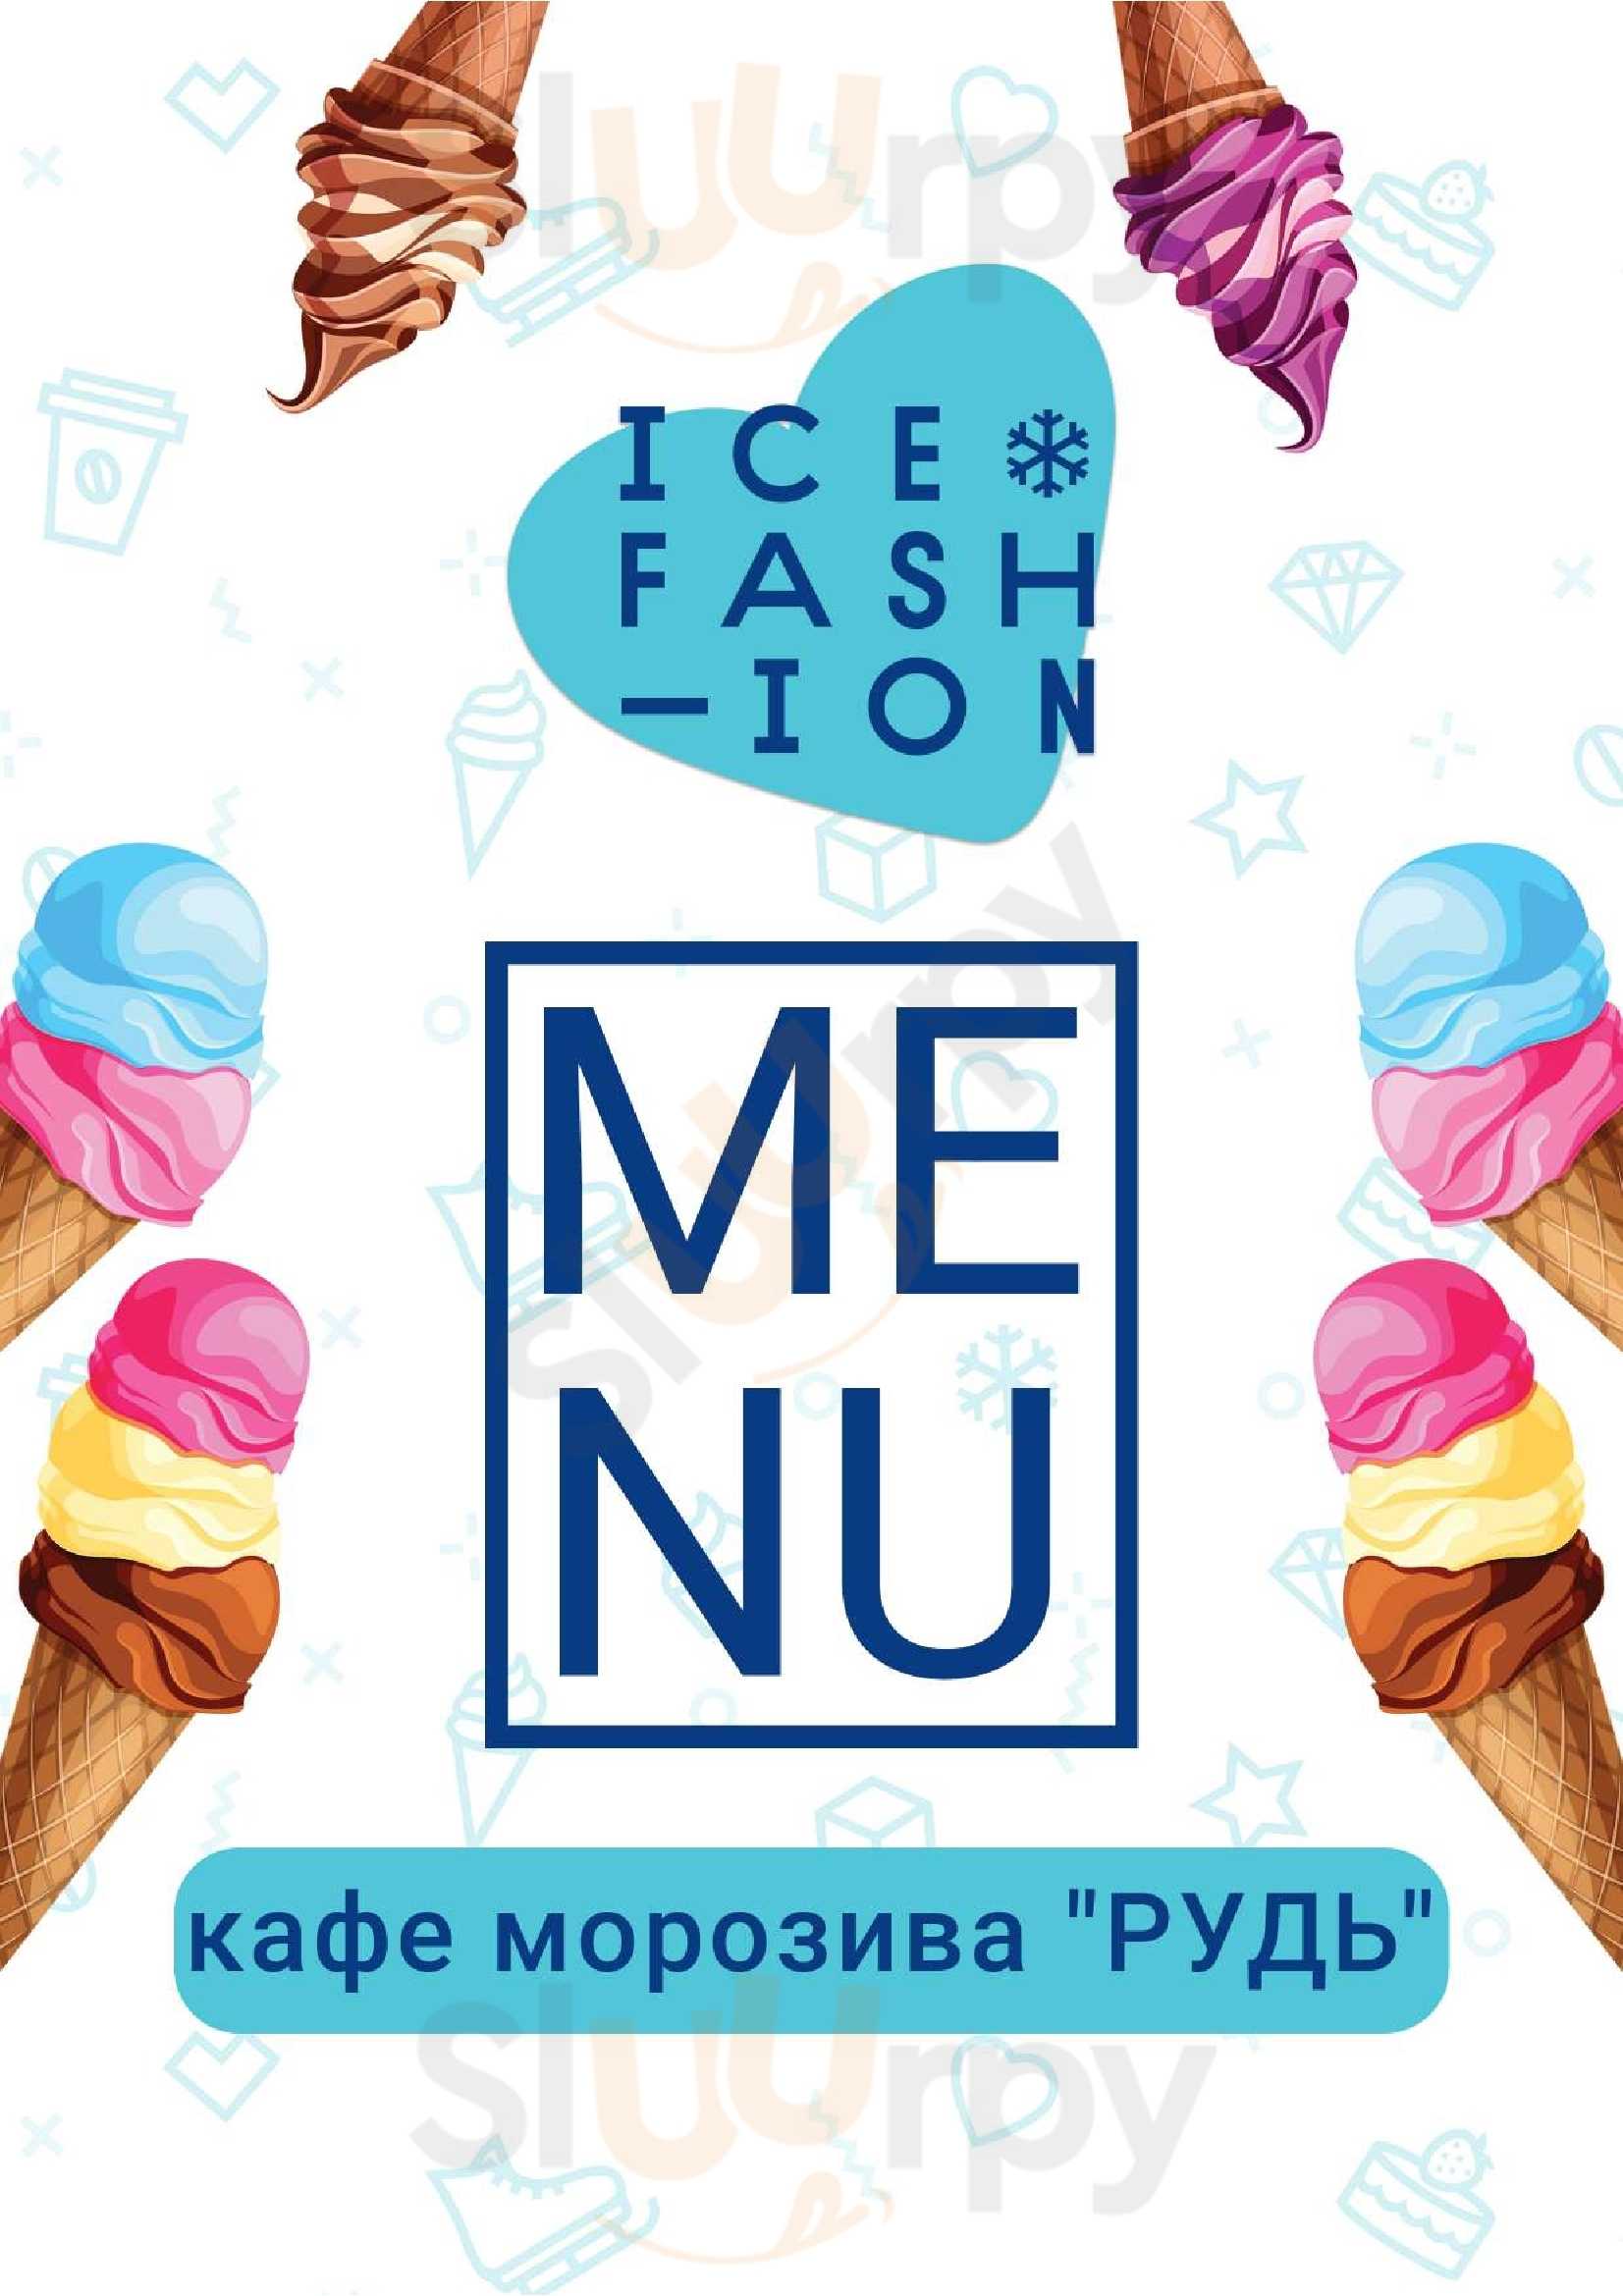 Ice Fashion Zhytomyr Menu - 1